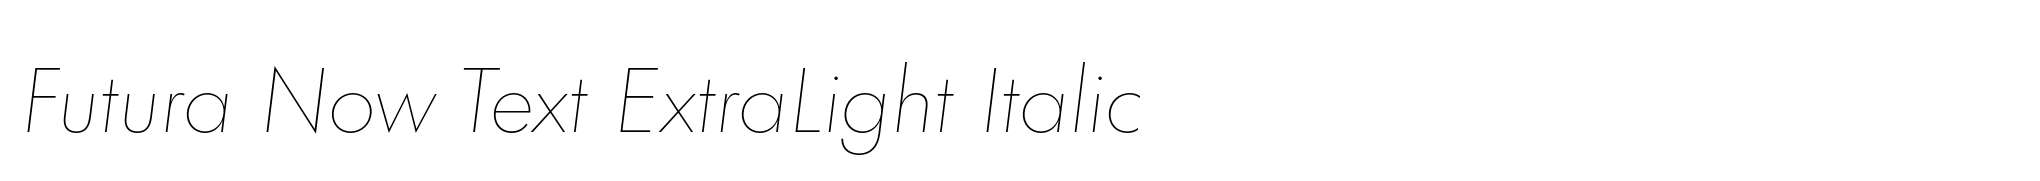 Futura Now Text ExtraLight Italic image